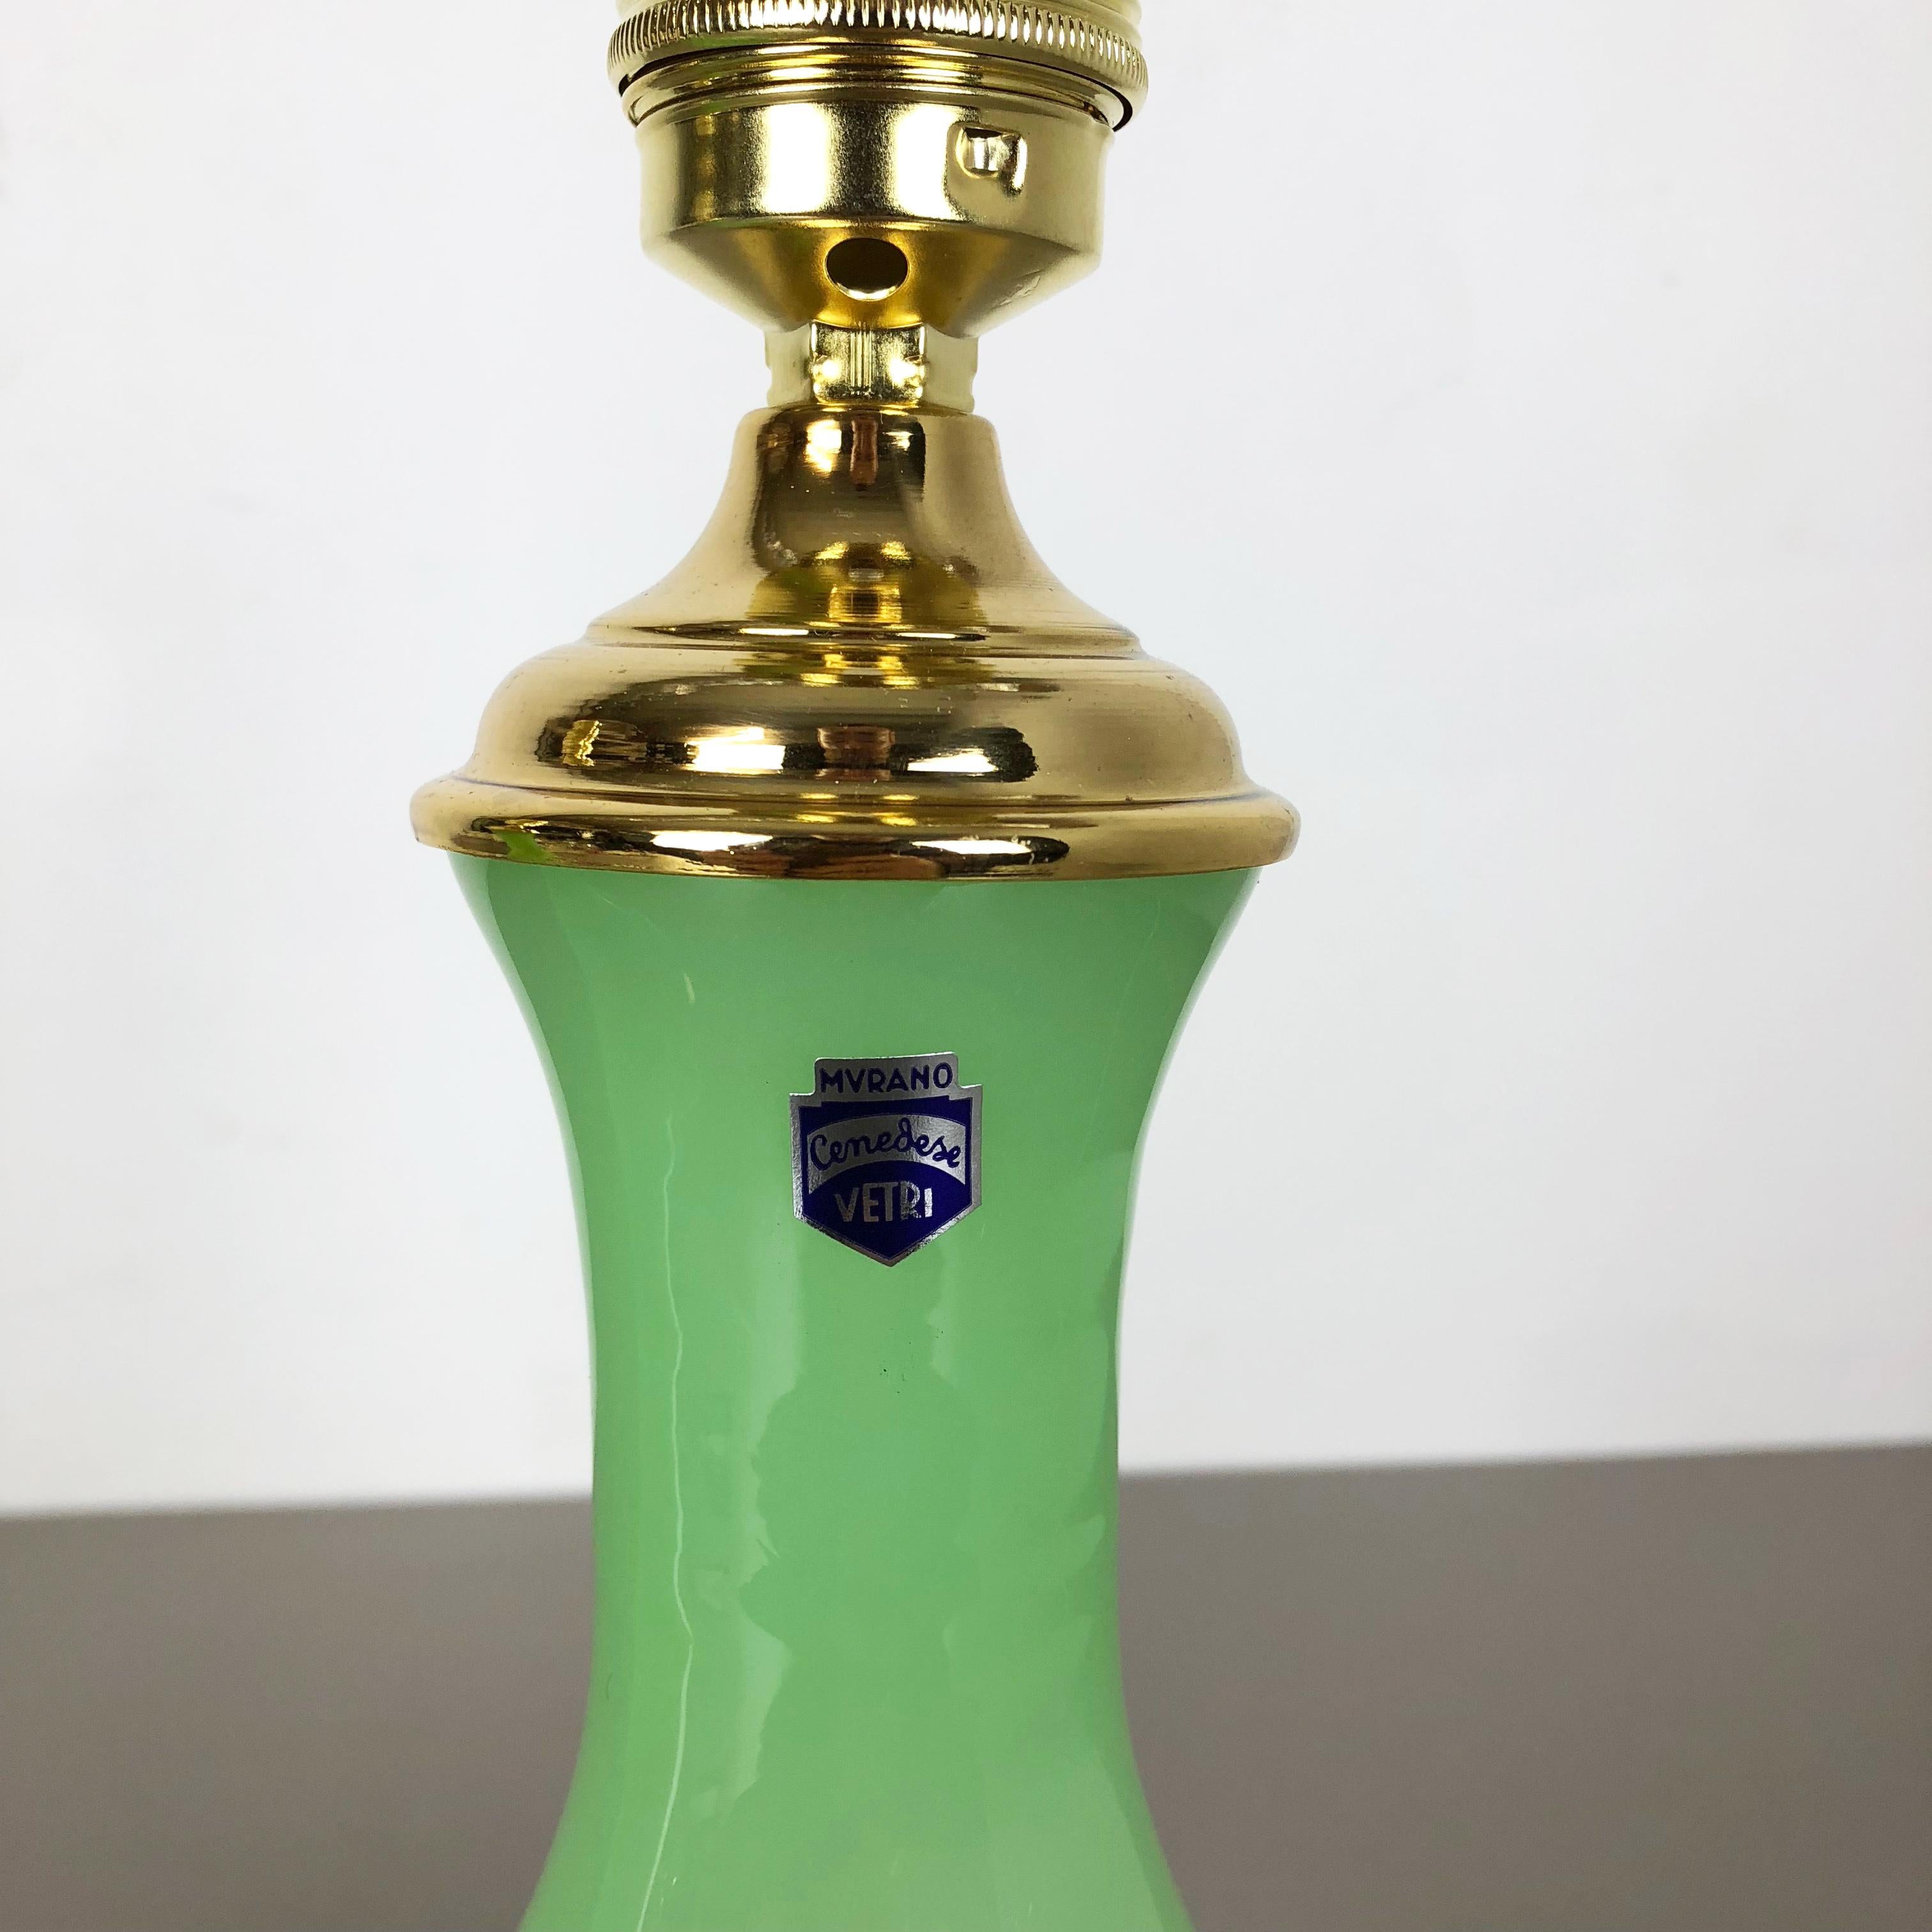 Article :

Lampe de table en verre opale de Murano

ensemble de 2



Producteur : 

Cenedese Vetri


Origine : 

Murano, Italie


Âge : 

1960s



Description : 

Cette fantastique lampe de table vintage a été conçue et